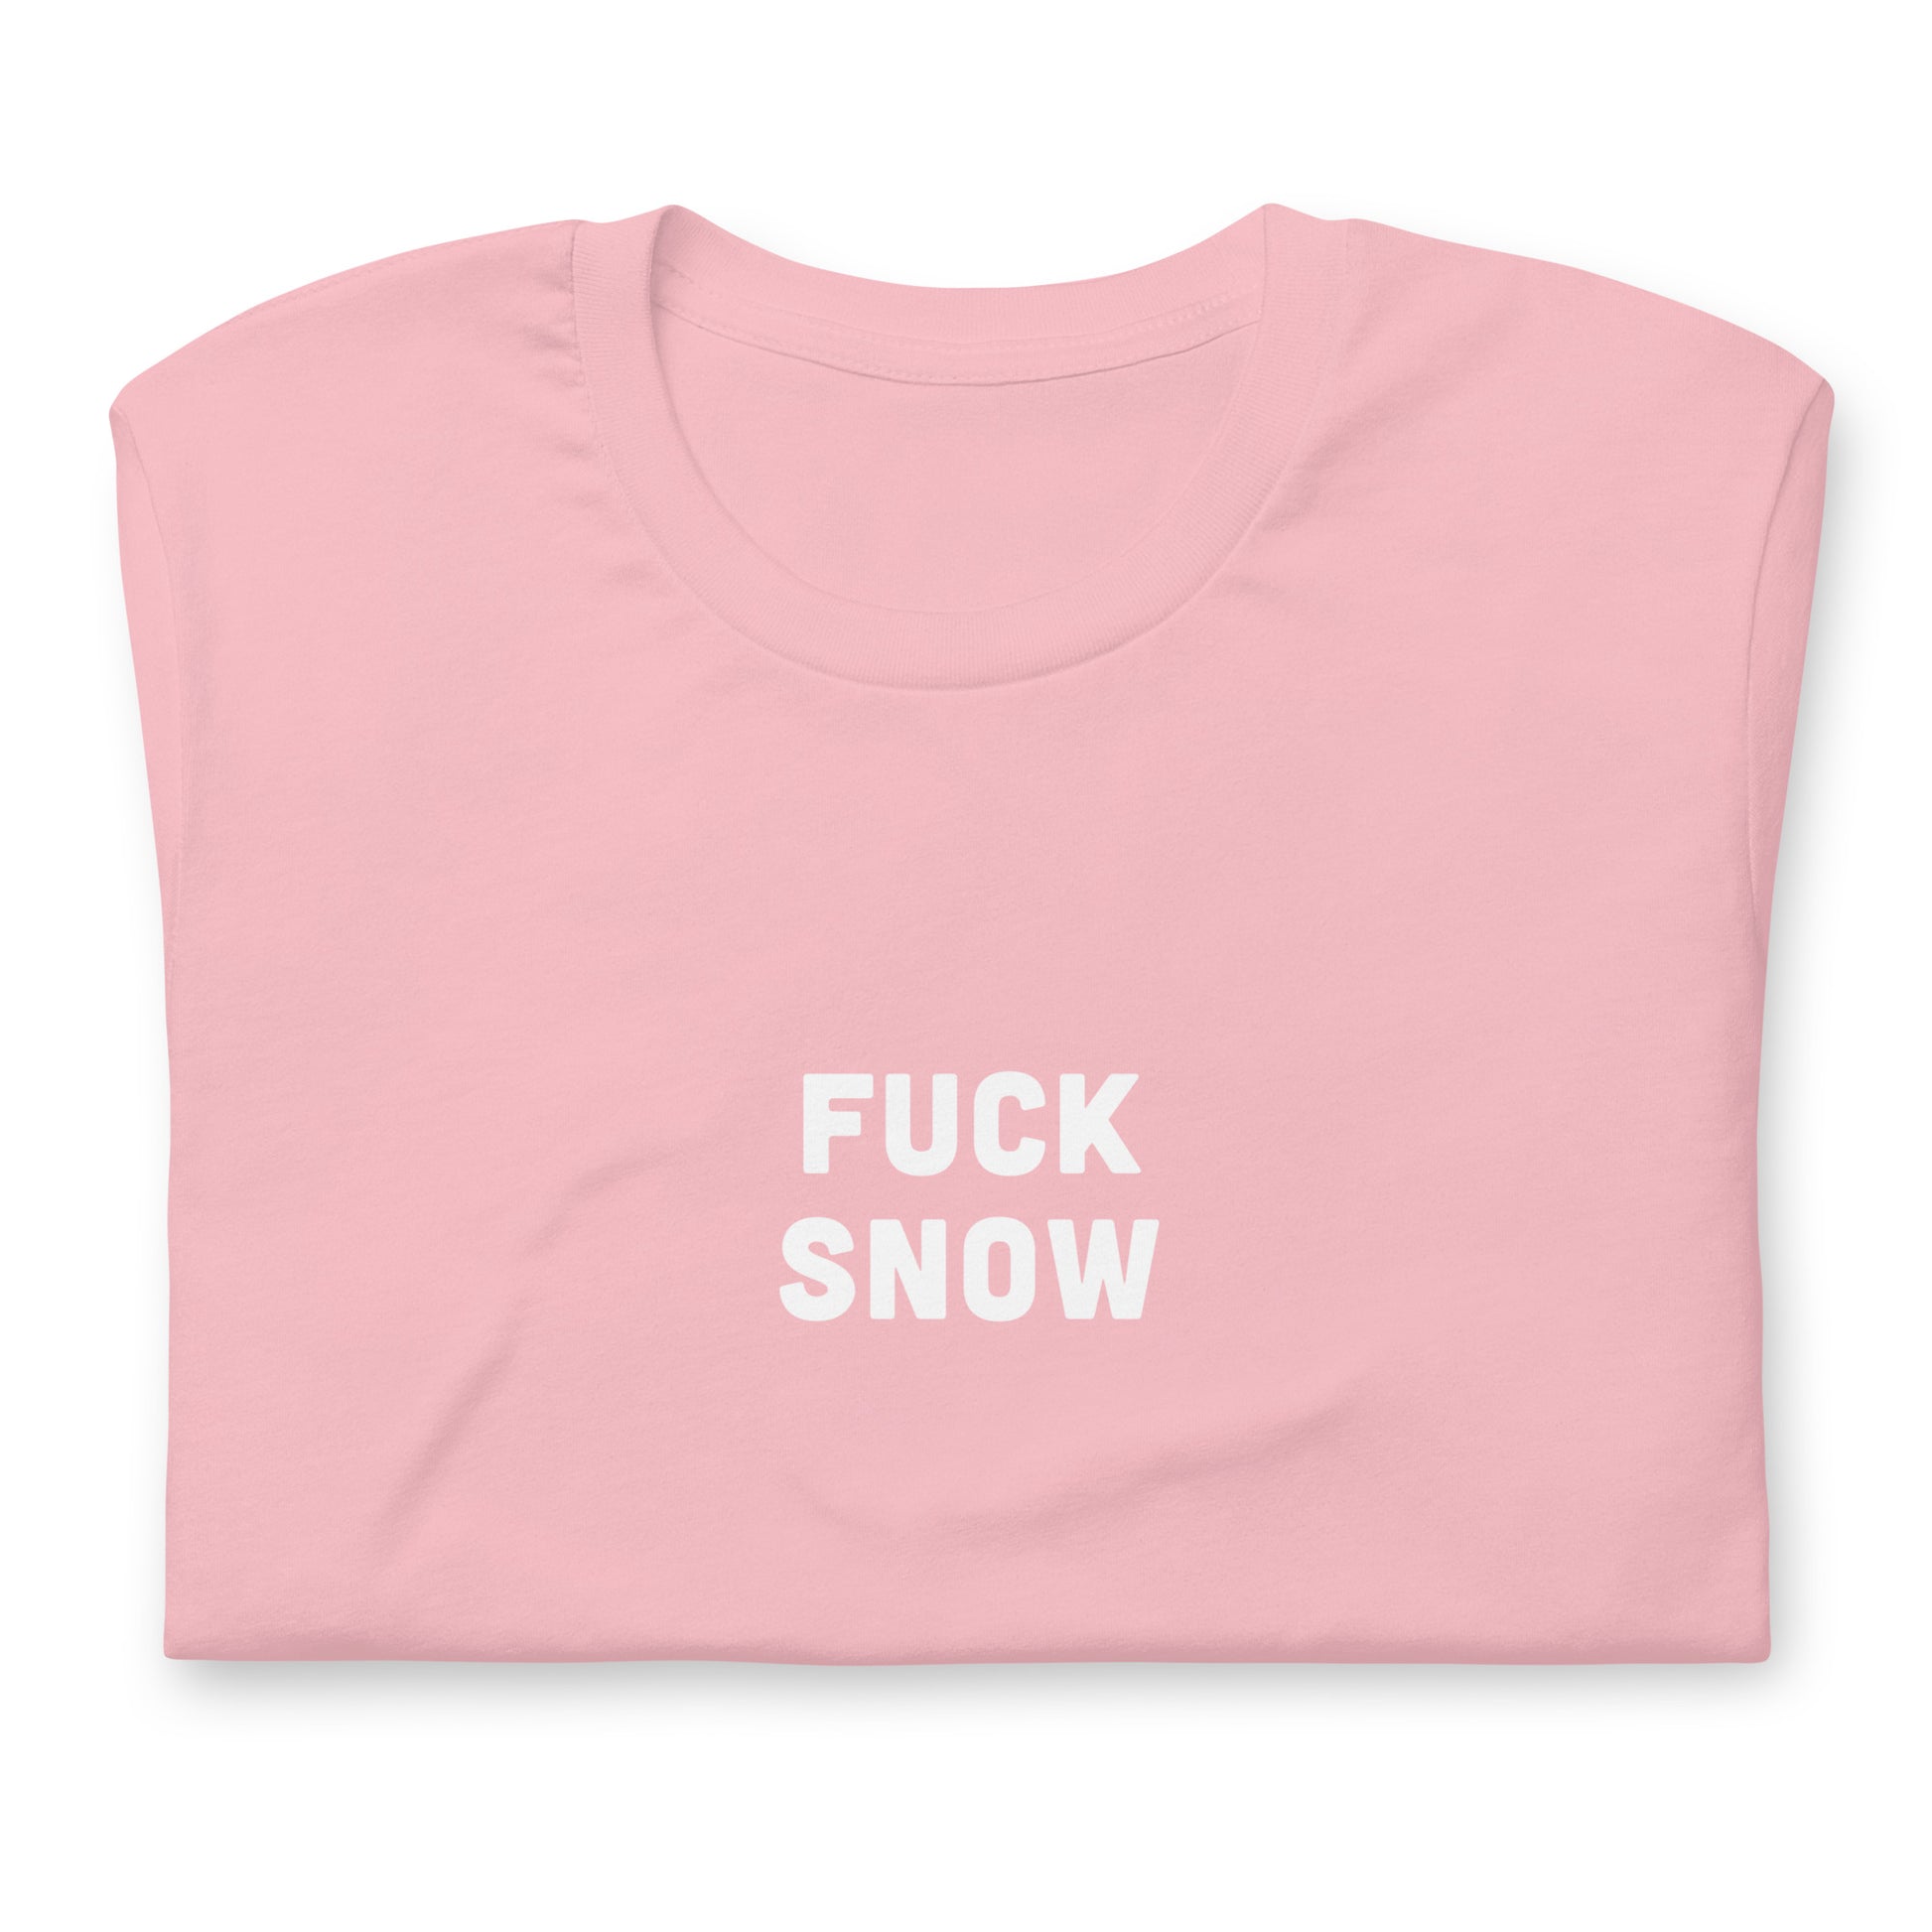 Fuck Snow T-Shirt Size M Color Asphalt